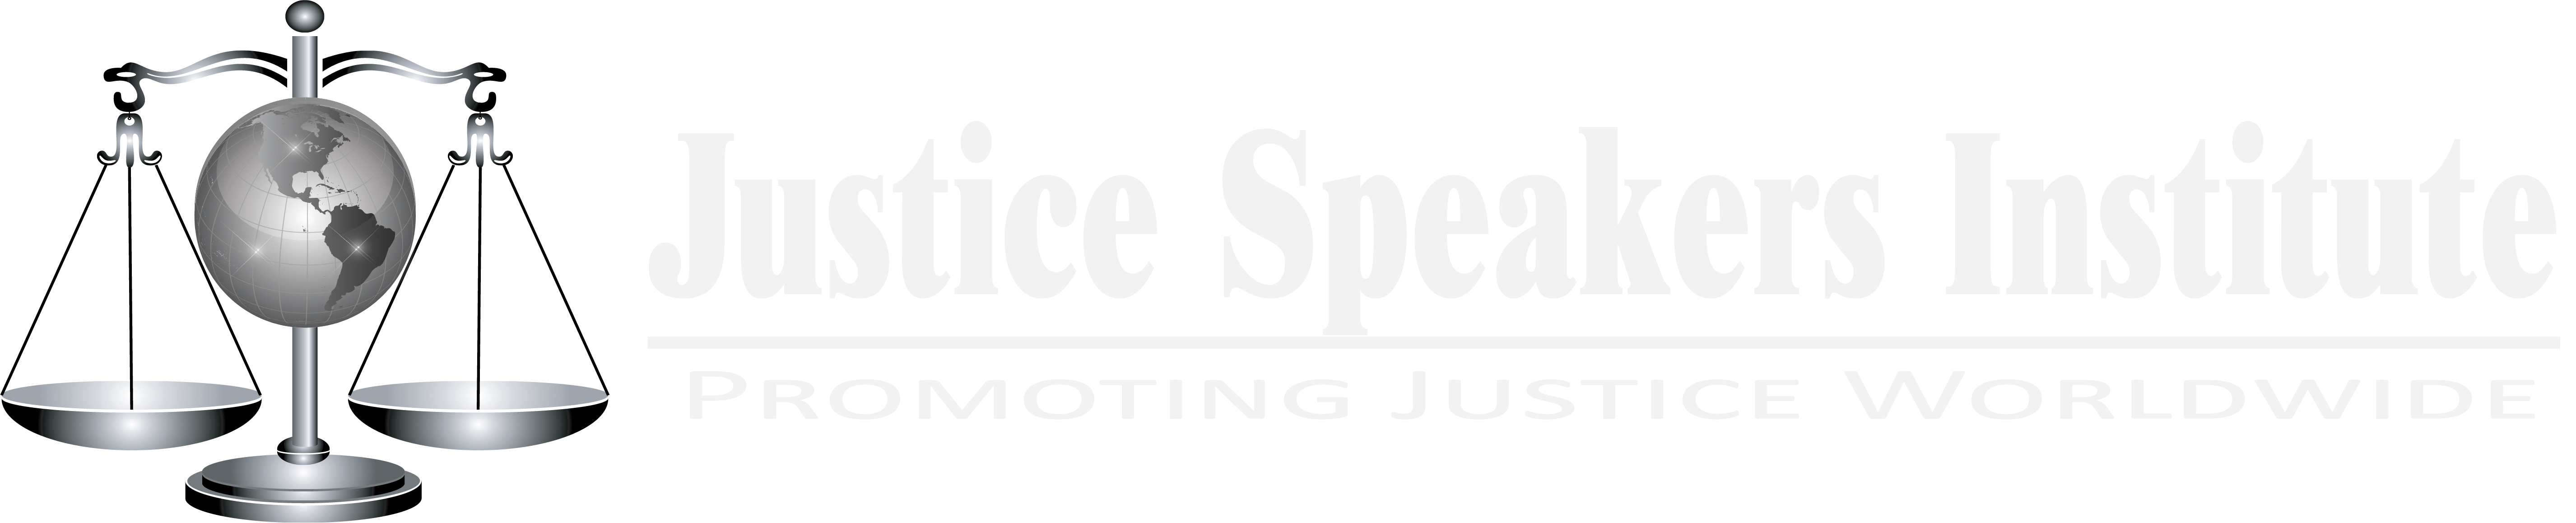 Justice Speakers Institute